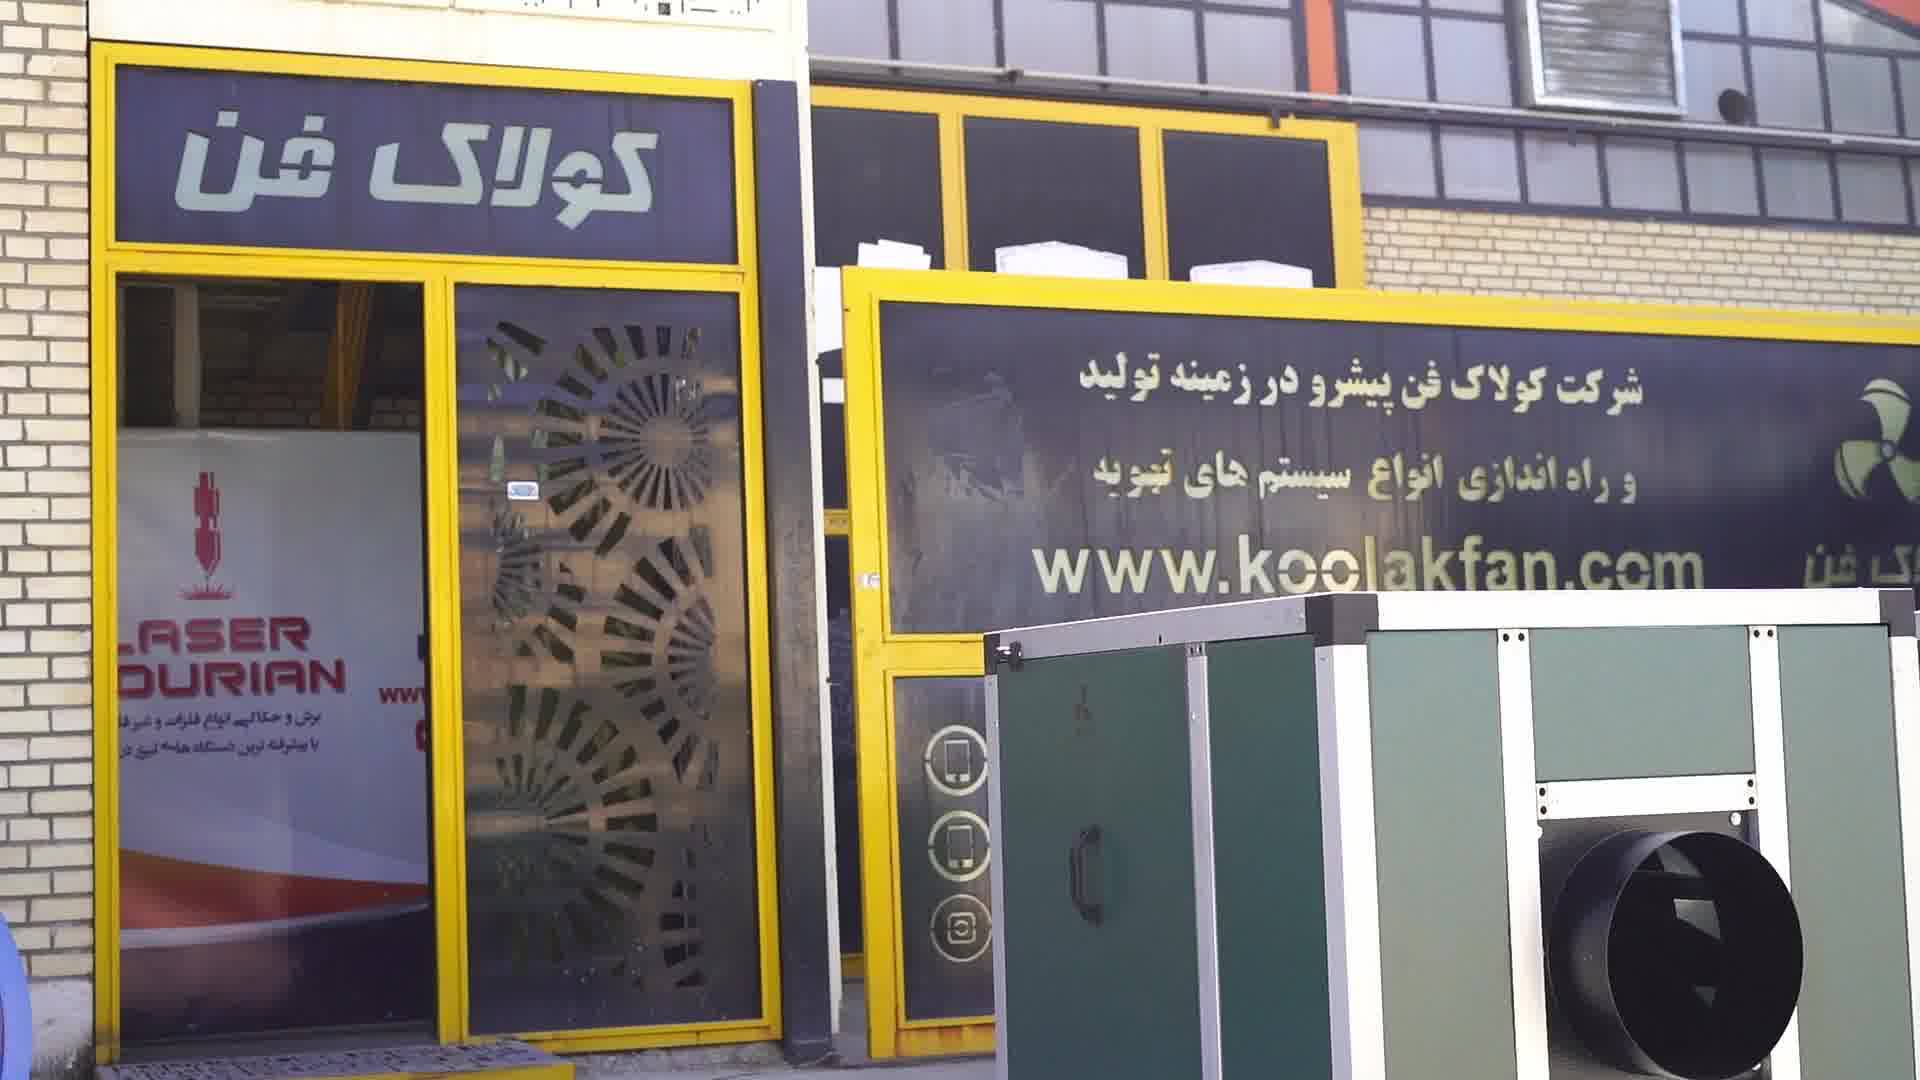 تولیدانواع سایلنت باکس تهویه رستوران ها توسط شرکت کولاک فن در جنوب ایران